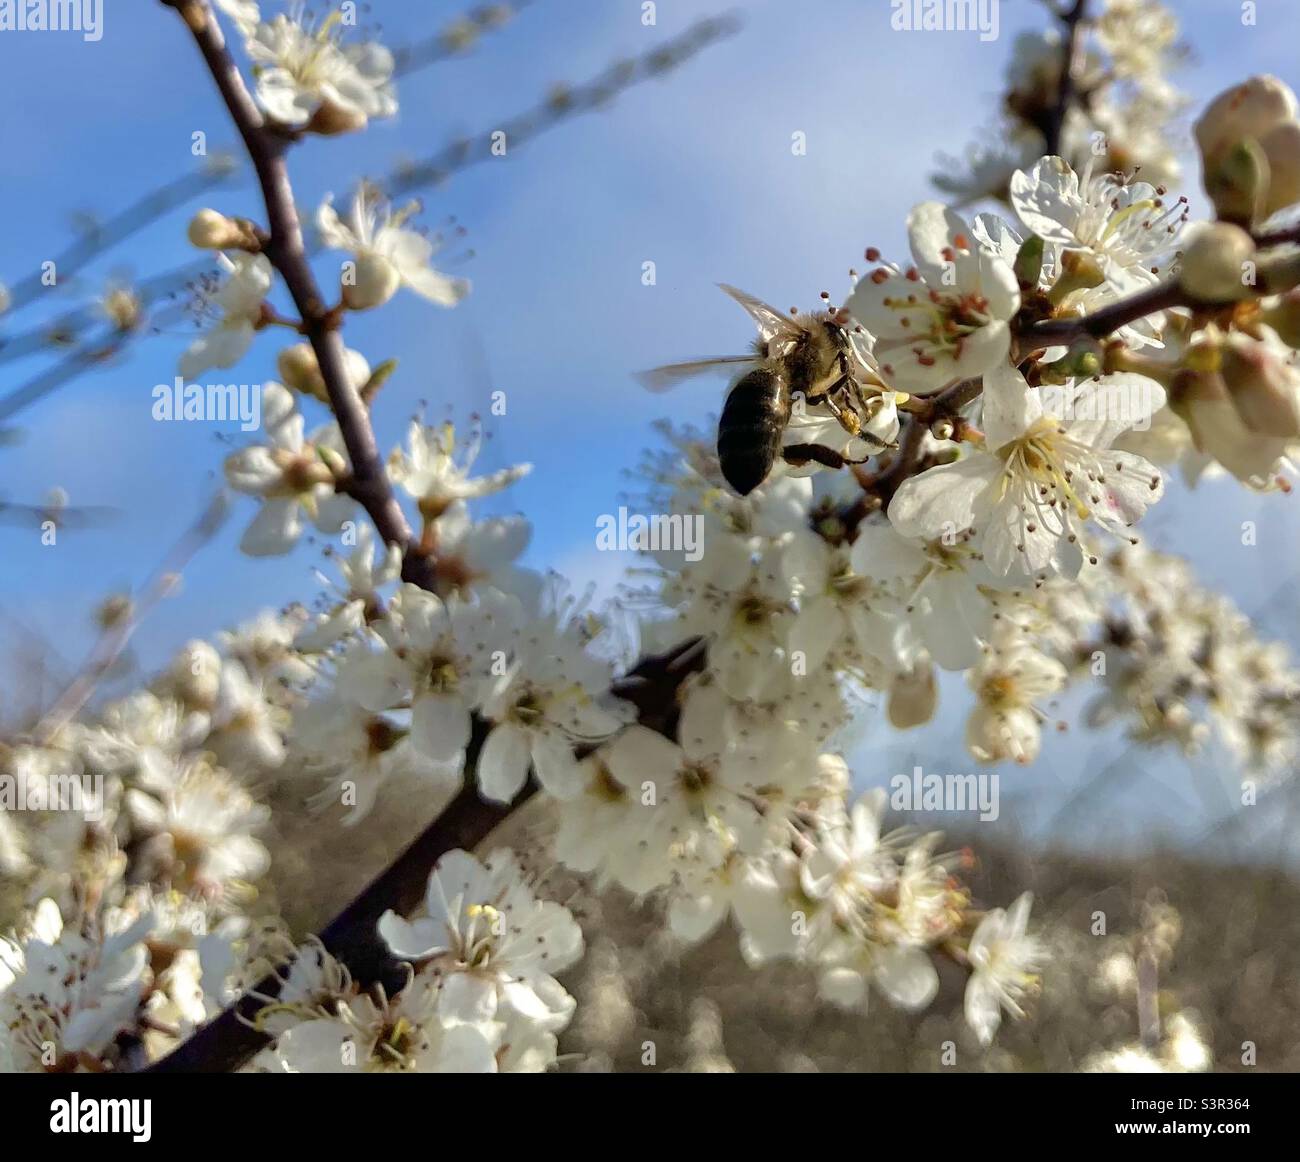 Honey bee on blossom Stock Photo